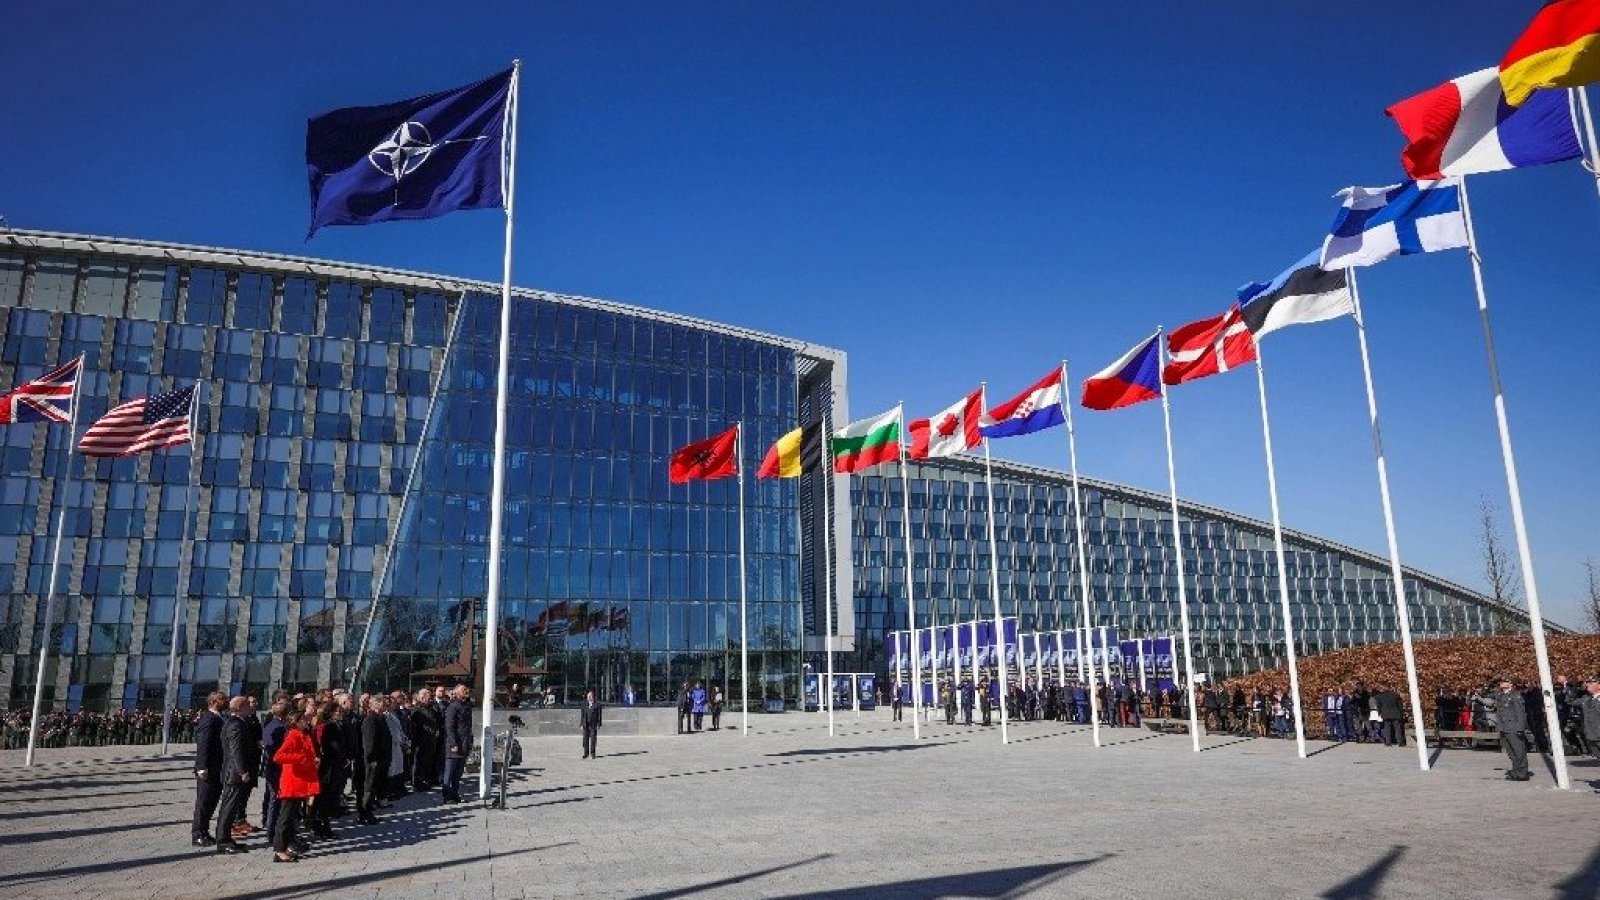 Banderas de los países miembros de la Organización del Tratado del Atlántico Norte (OTAN)